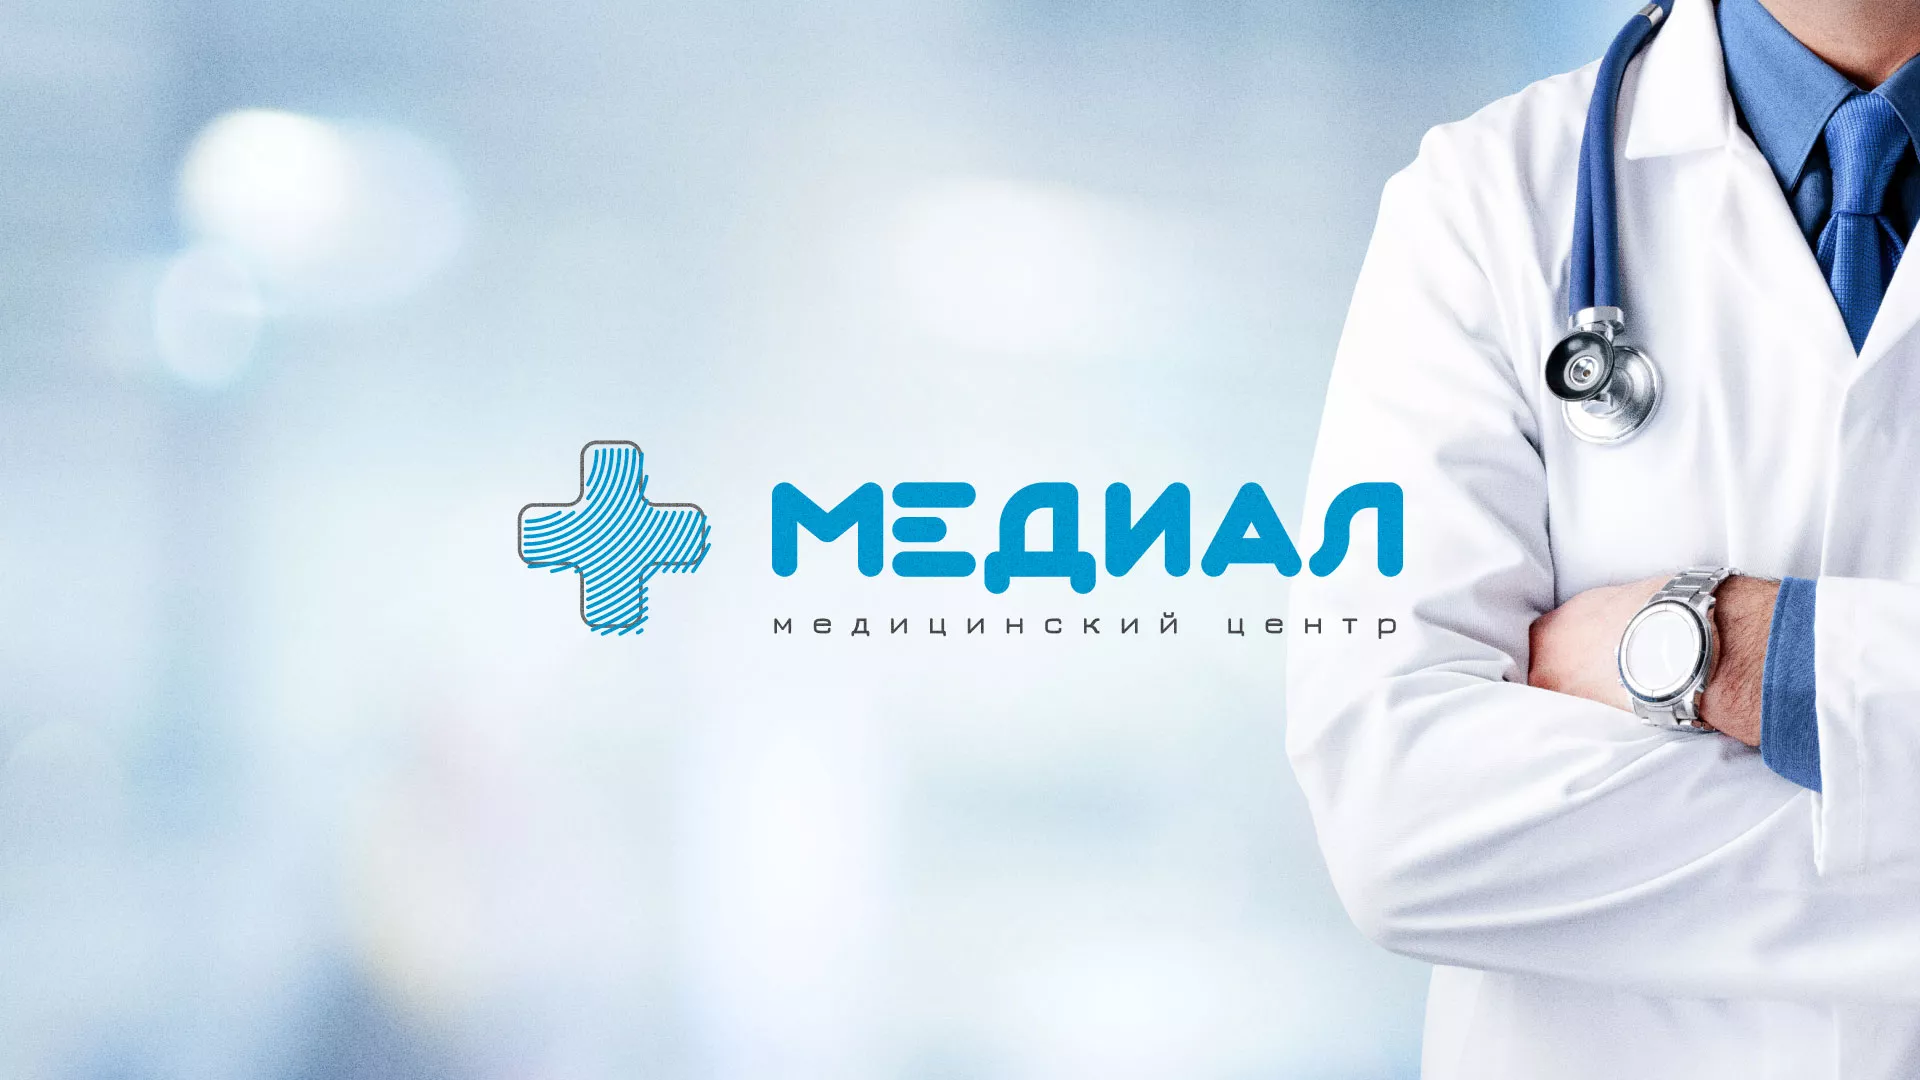 Создание сайта для медицинского центра «Медиал» в Мамоново